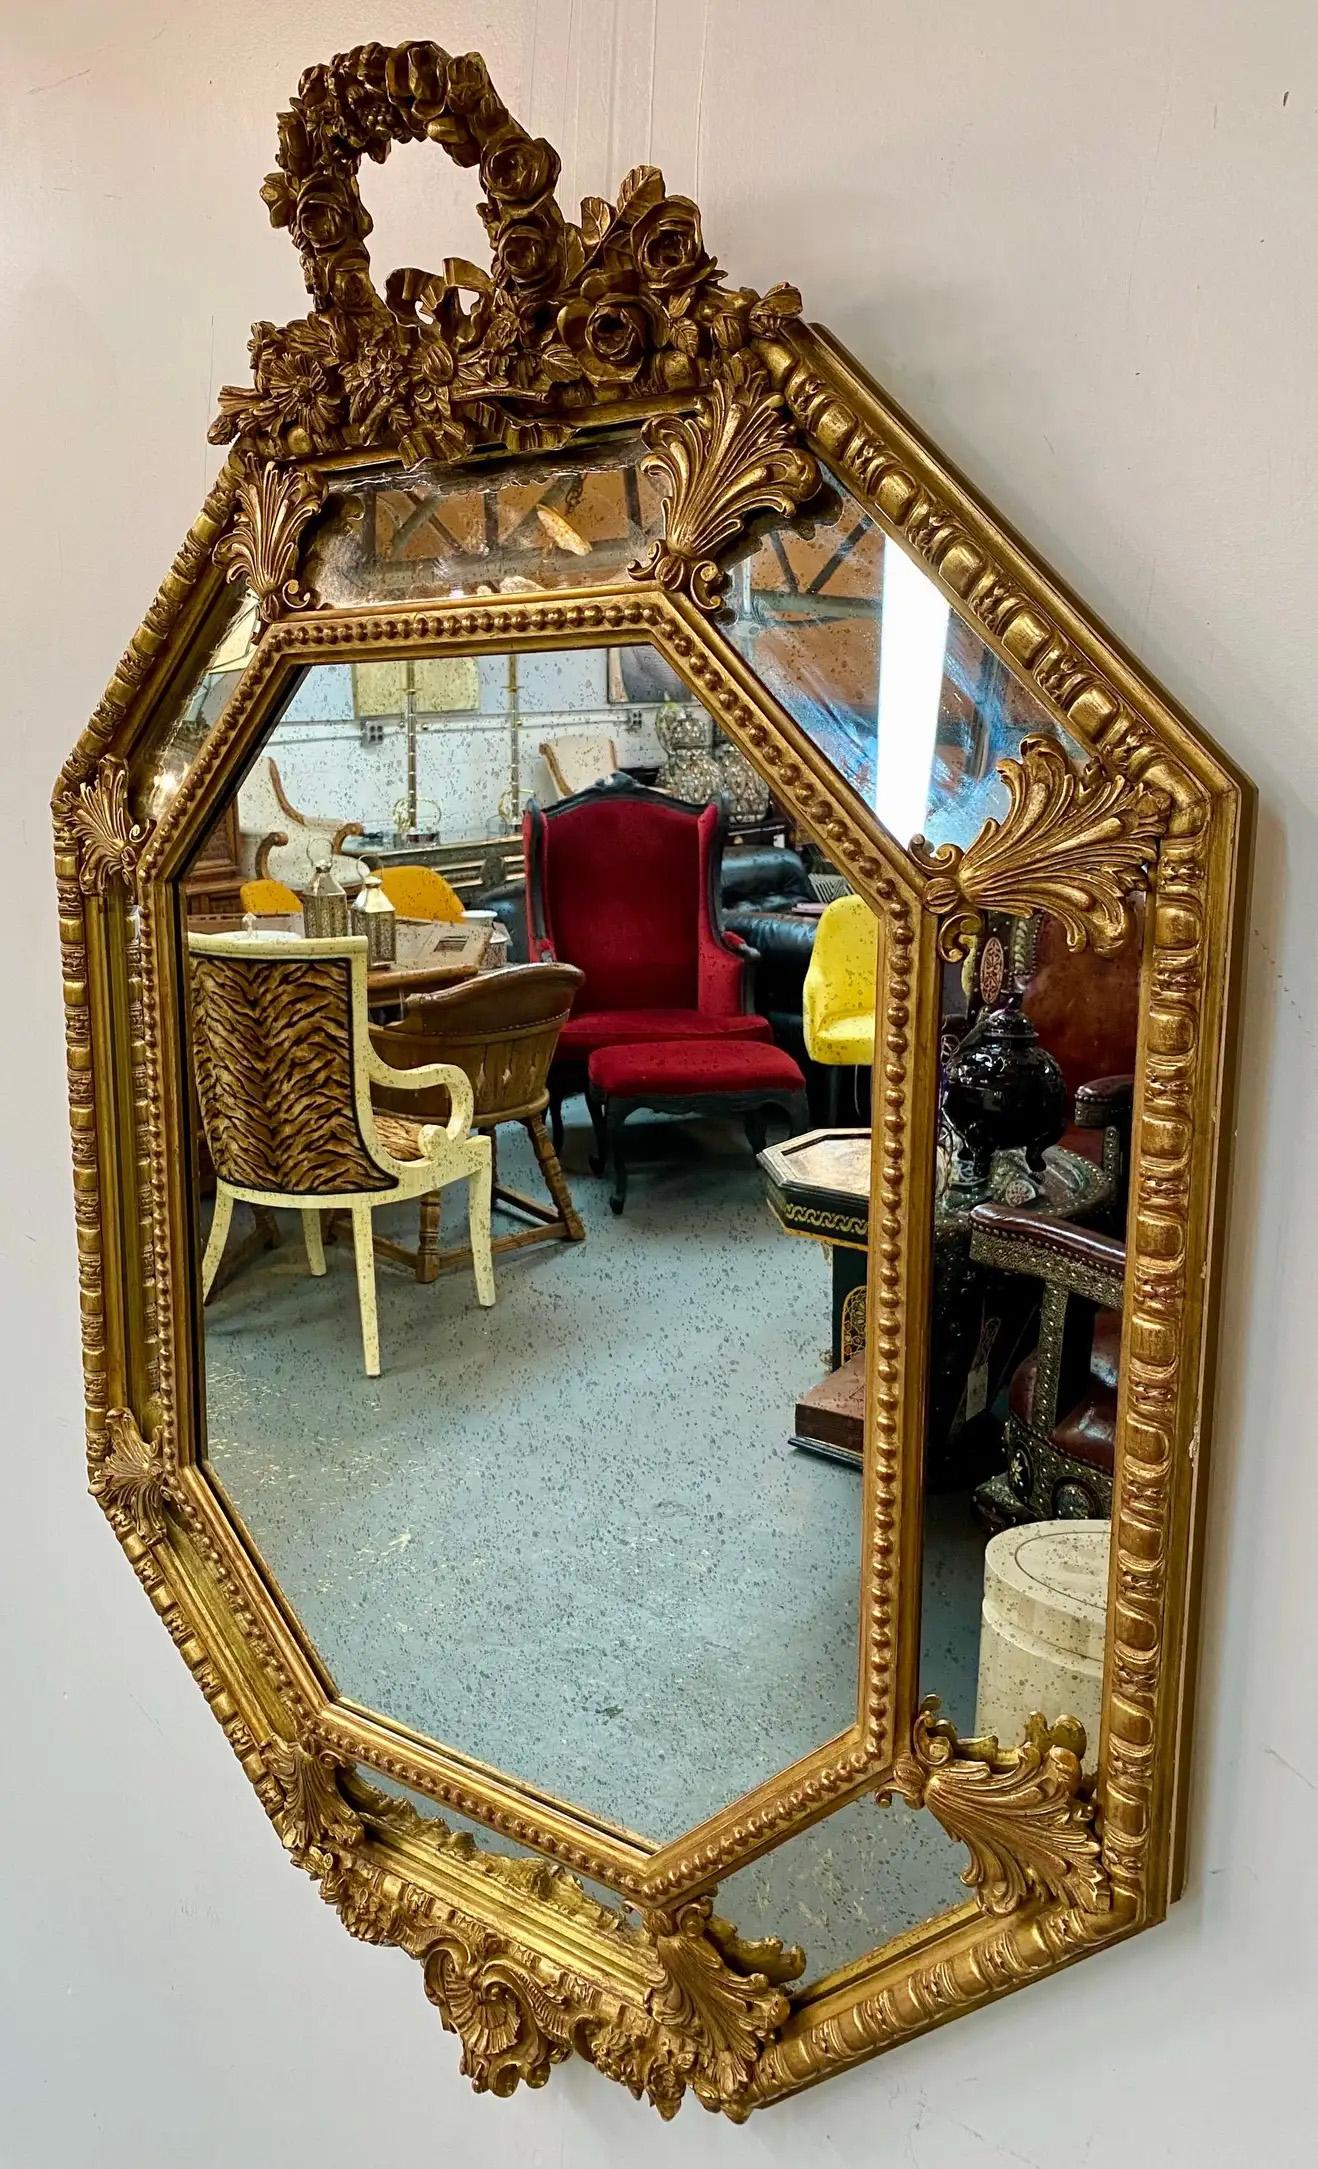 Ein exquisiter Spiegel aus vergoldetem Holz im französischen Regency-Stil. Der Spiegel aus dem späten 19. Jahrhundert hat eine achteckige Form und ist sehr fein gearbeitet. Das Wappen ist aufwendig geschnitzt und zeigt ein florales Muster und eine